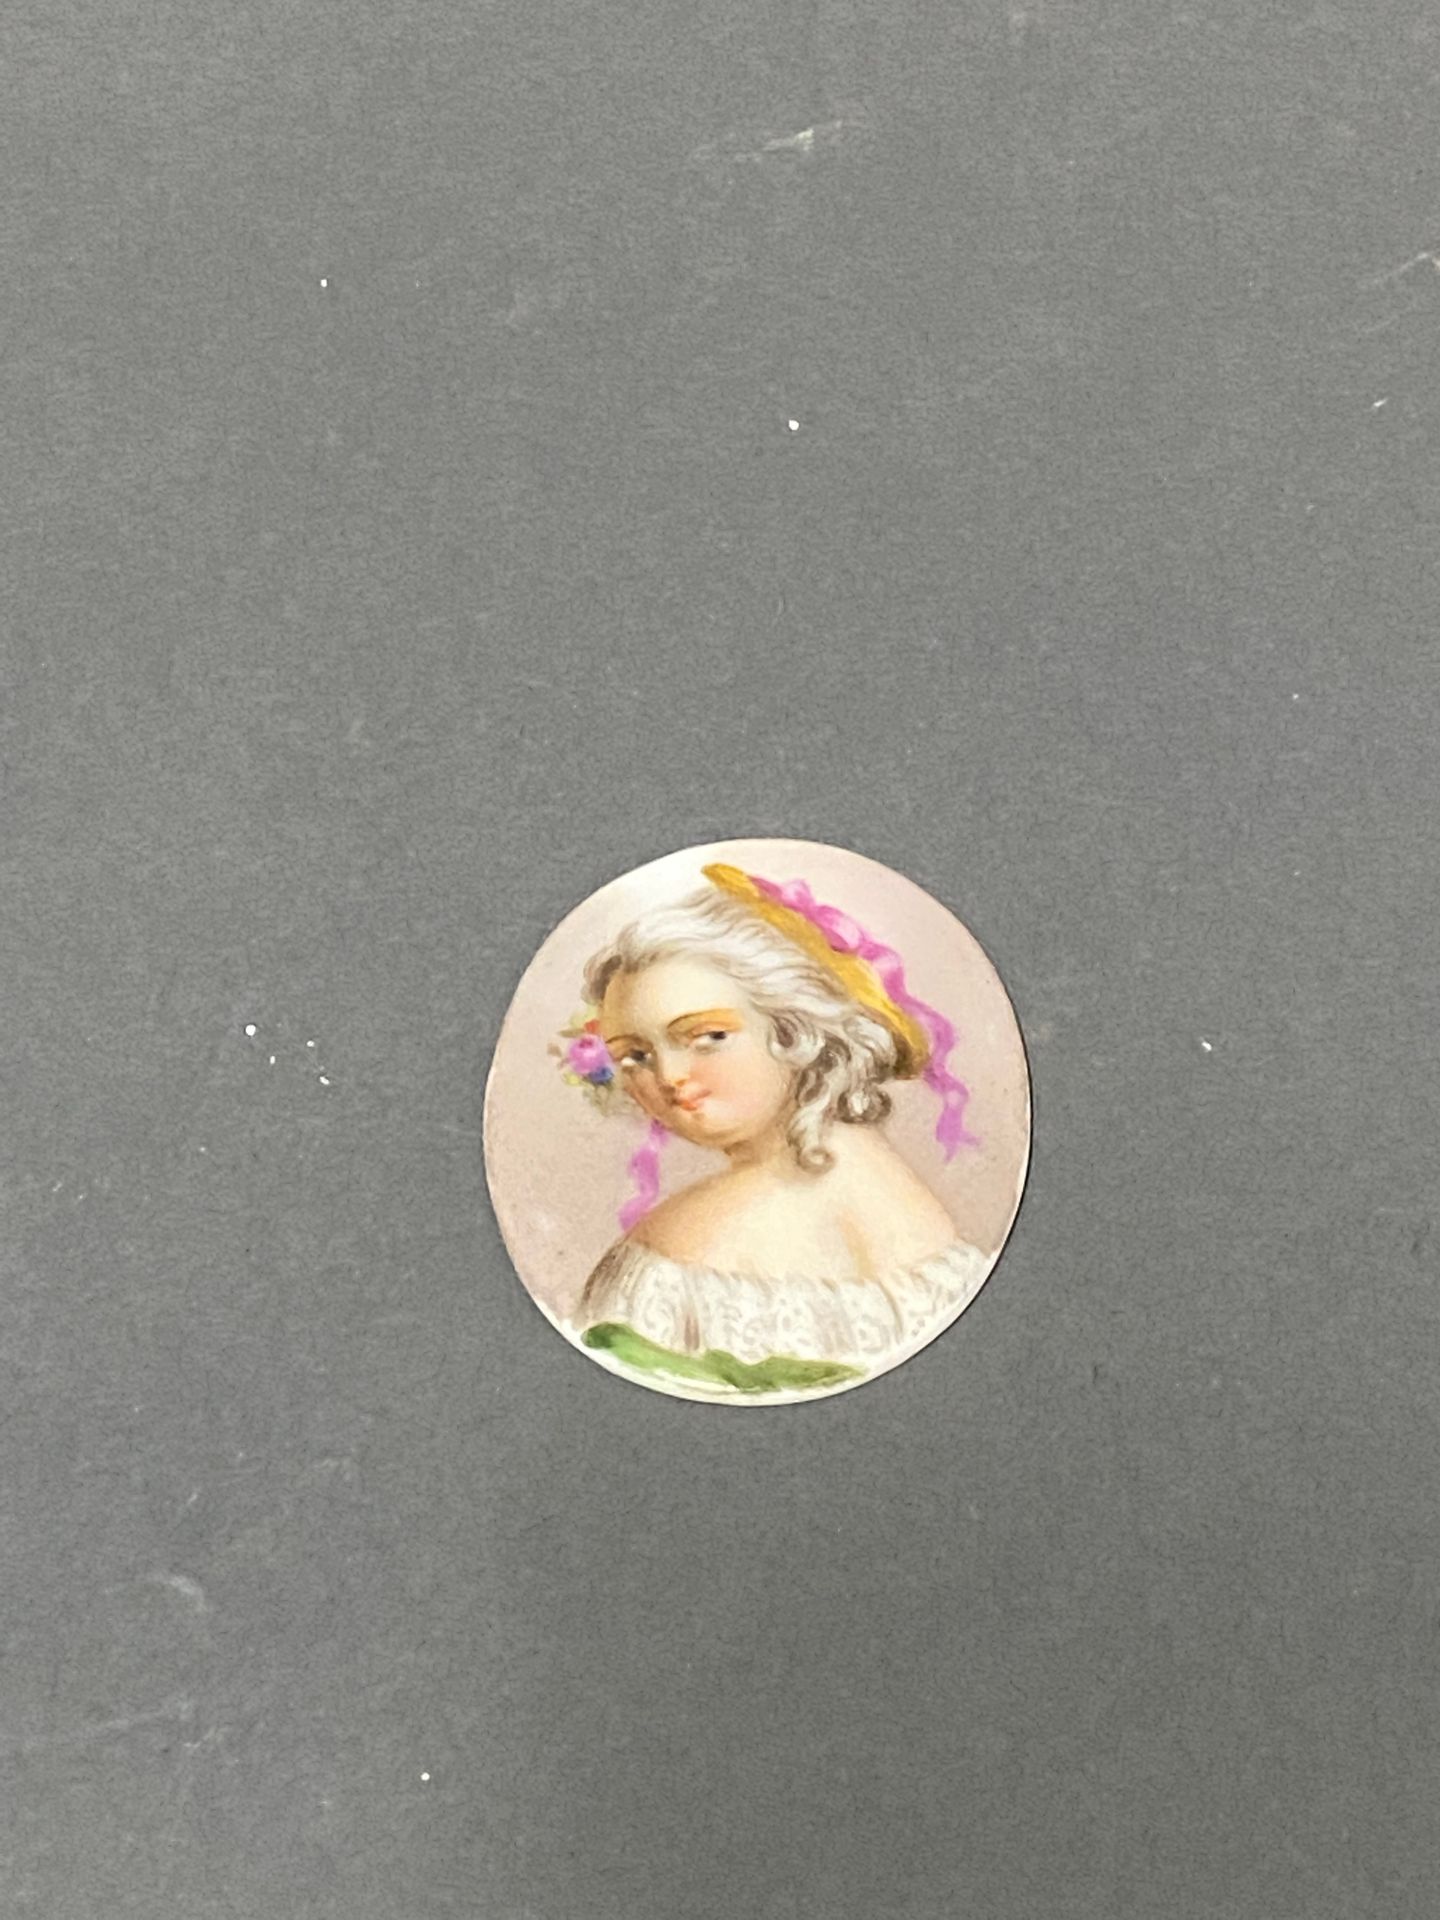 Null "Portrait d'enfant"

Miniature sur plaque de porcelaine 

4,3 x 3,4 cm